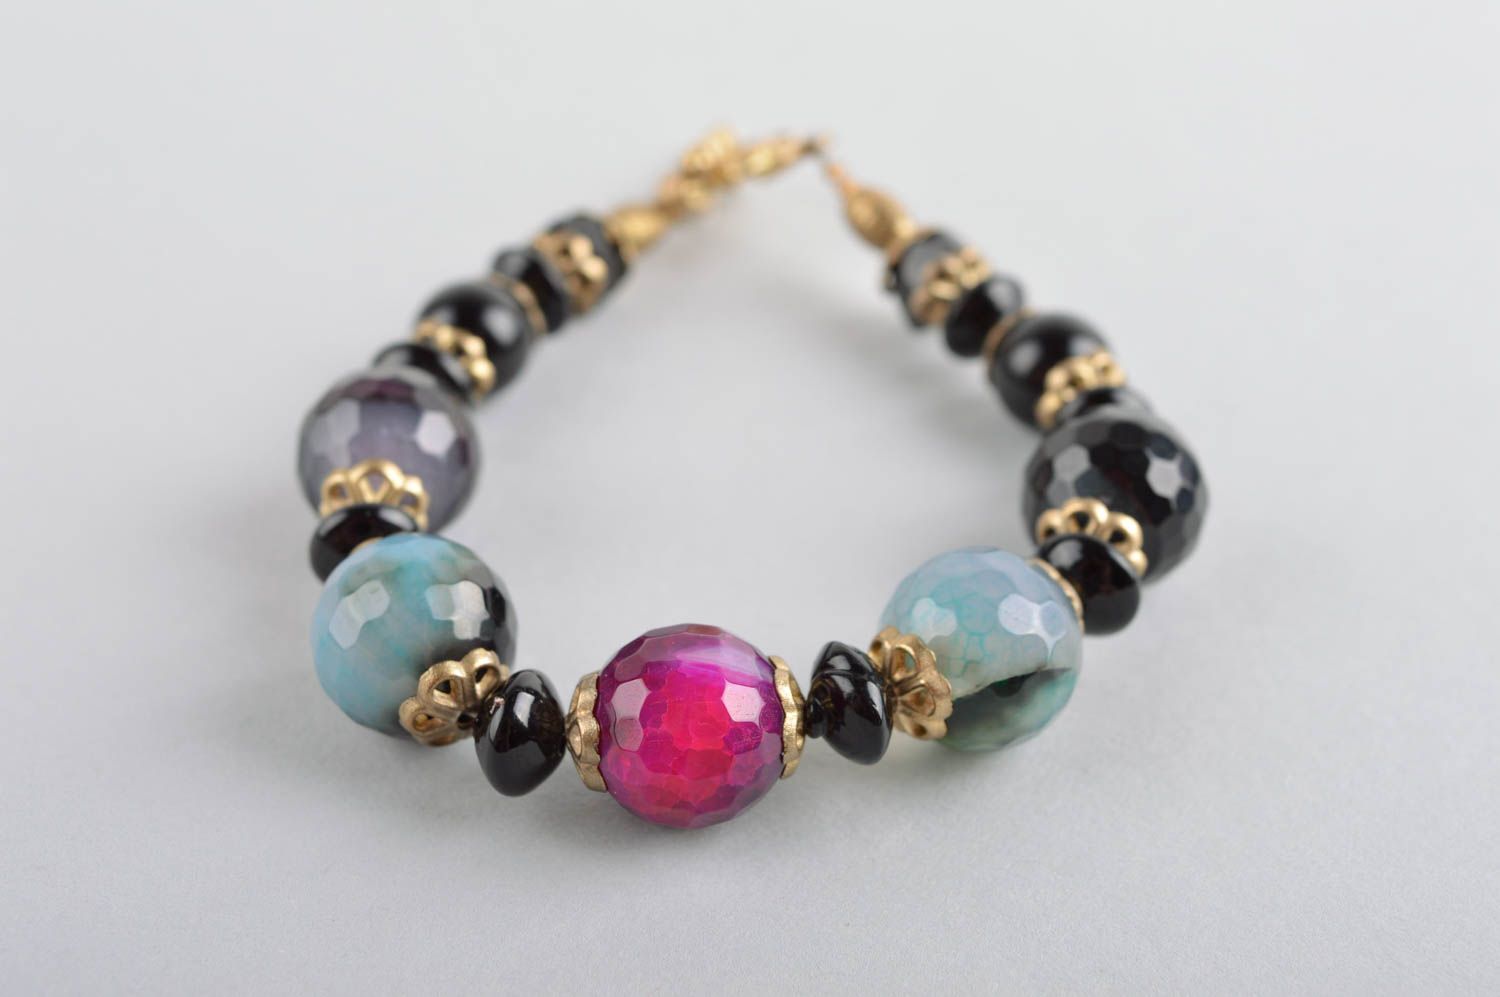 Dark beads charm bracelet for women photo 4